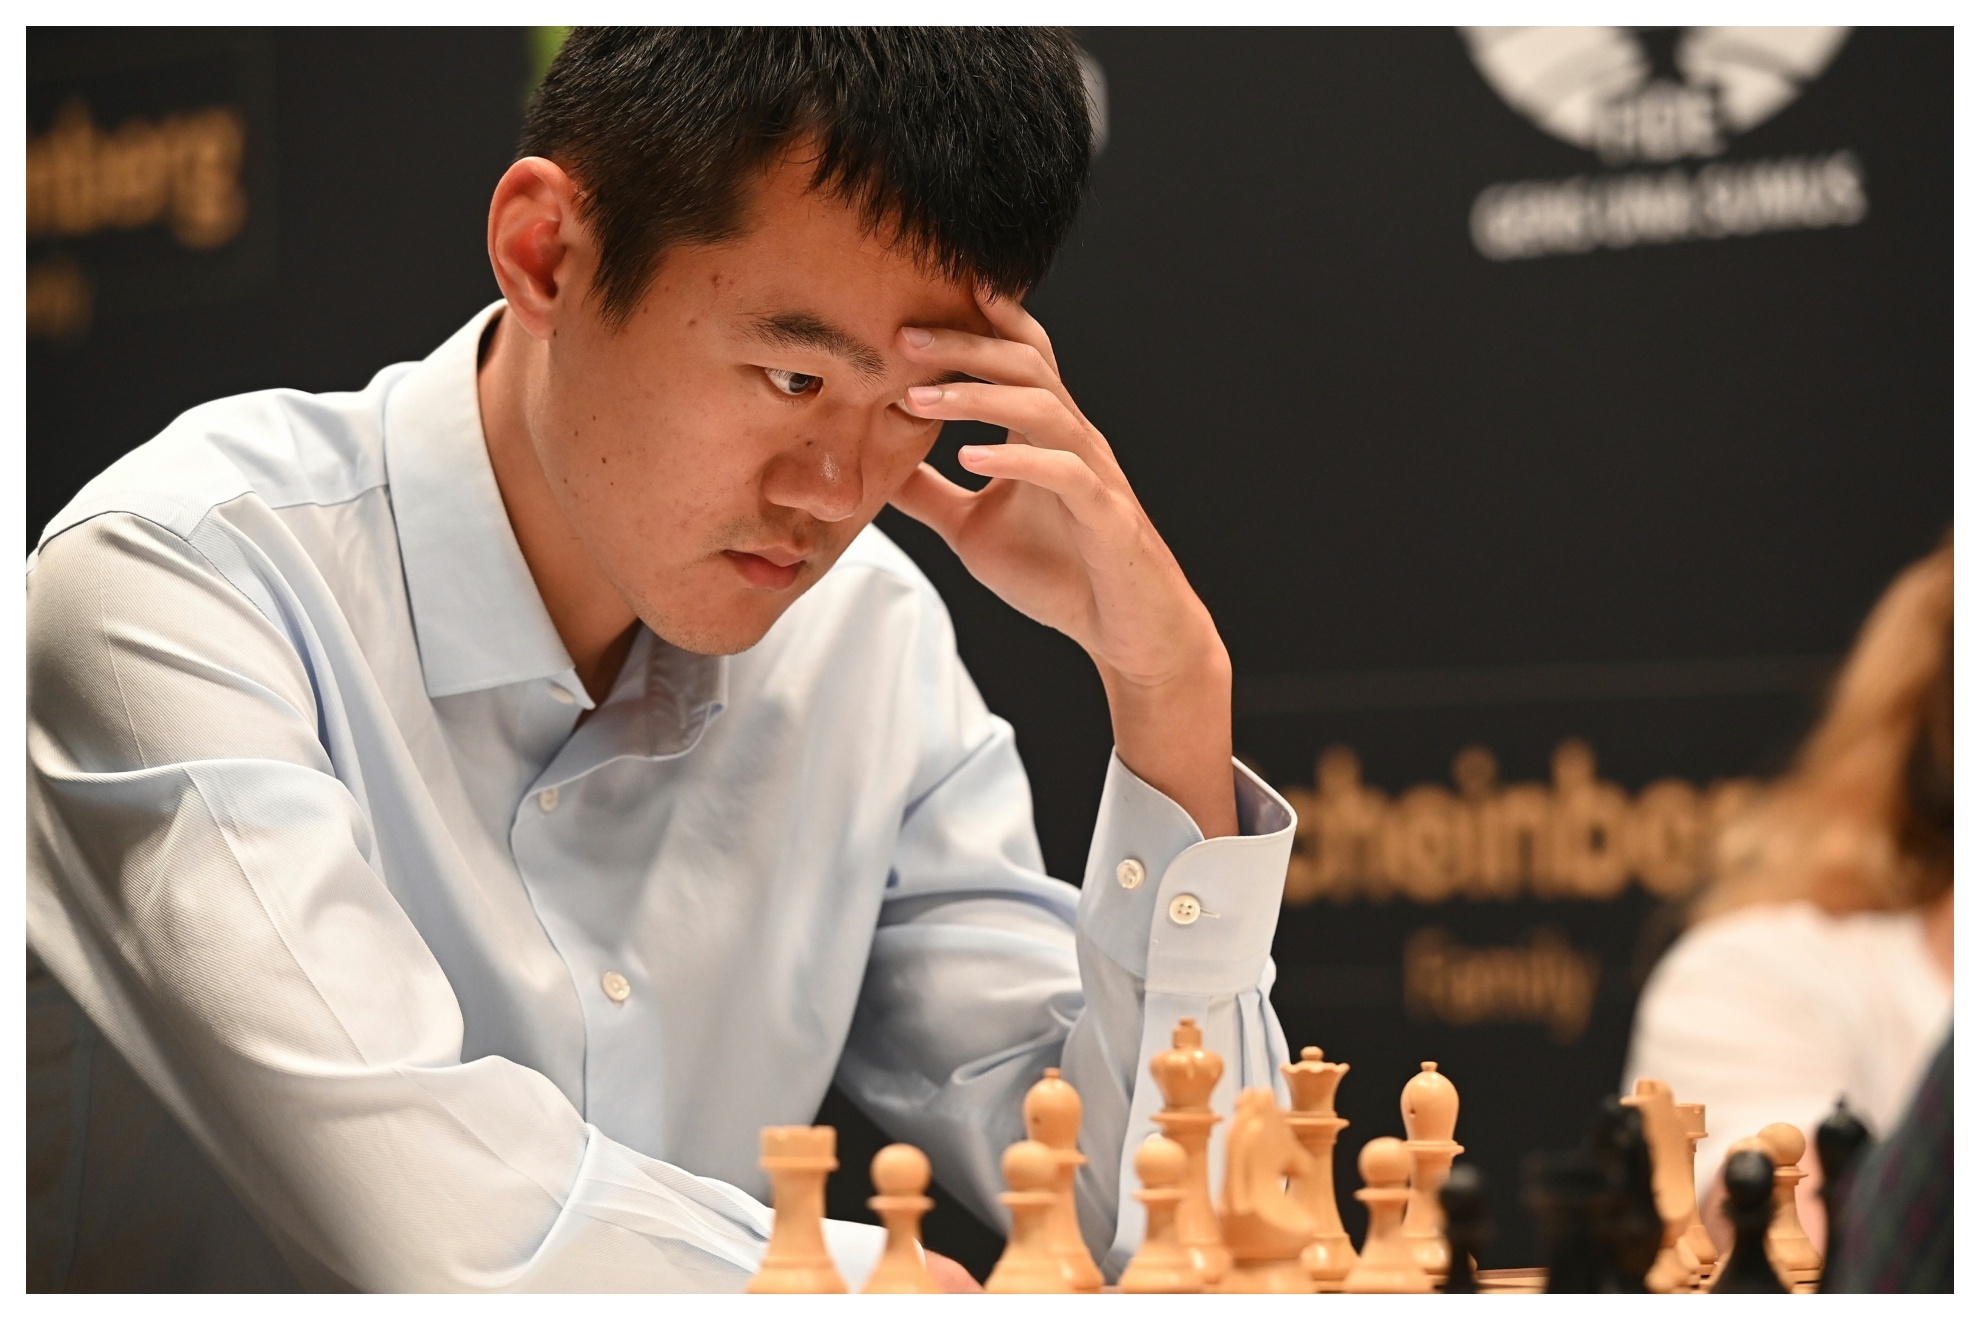 El Gran Maestro chino Ding Liren compite en la decimocuarta ronda del Torneo de Candidatos, en el Palacio de Santoña en Madrid.